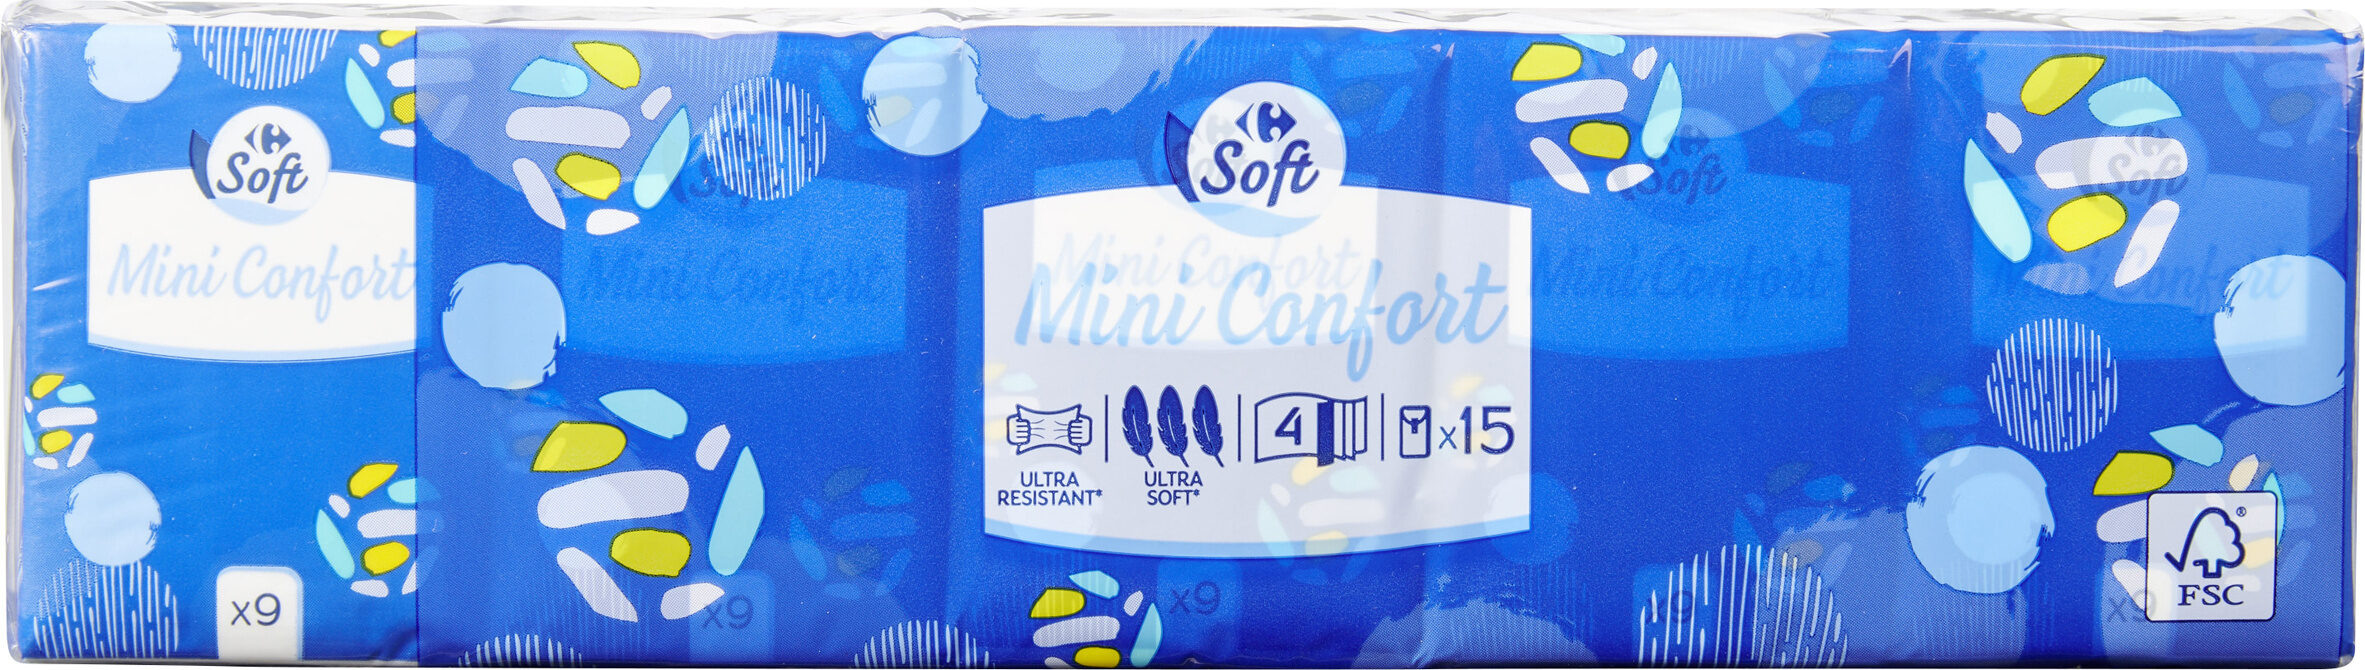 mini confort - Produit - fr